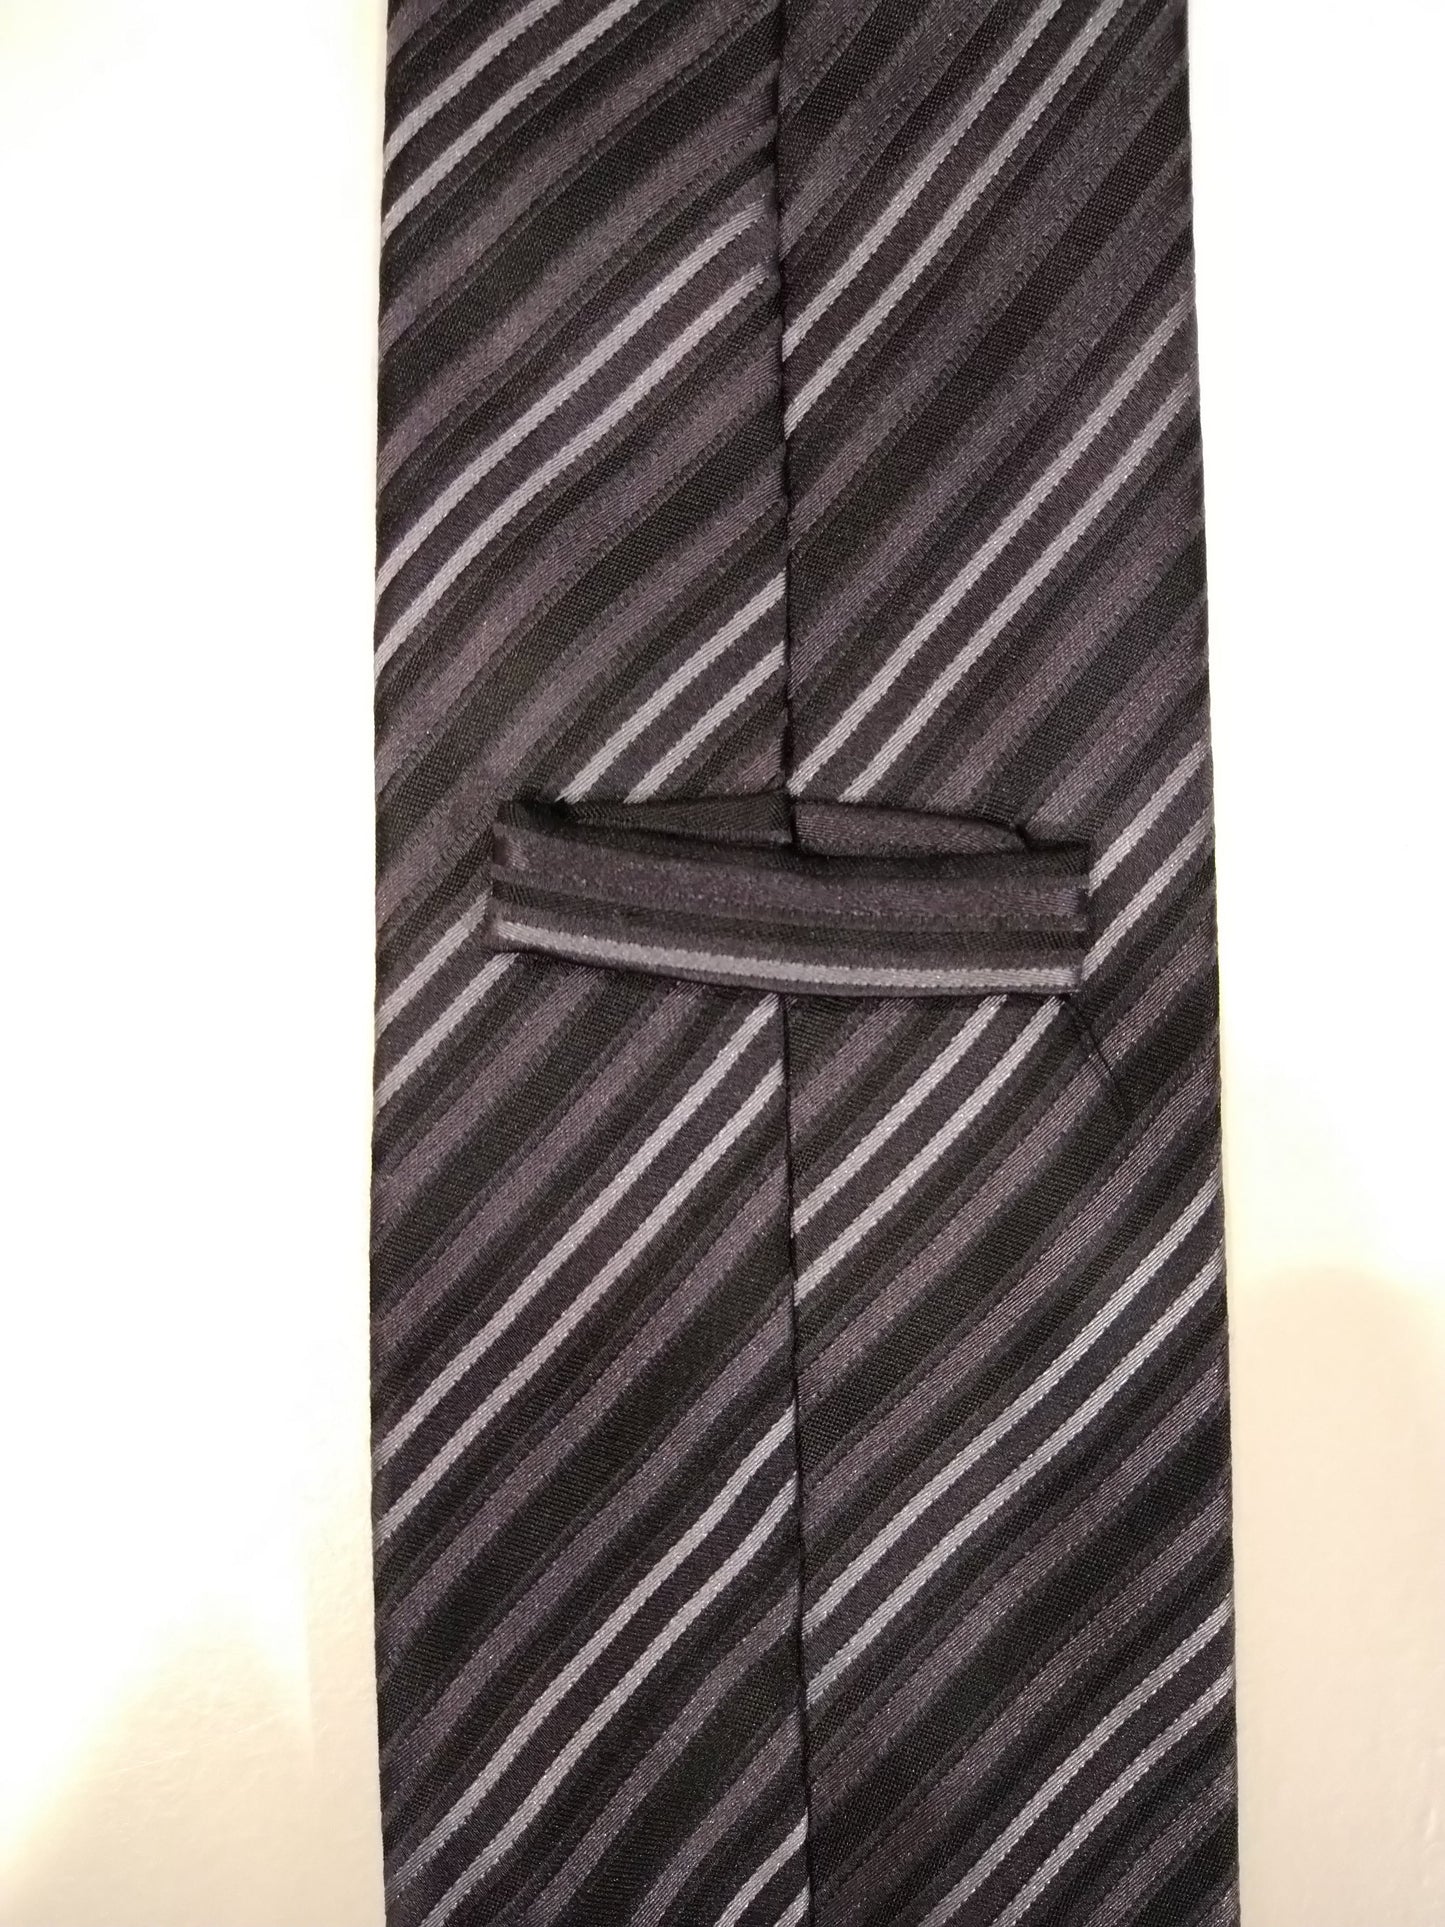 Zijde stropdas. Zwart wit gestreept motief